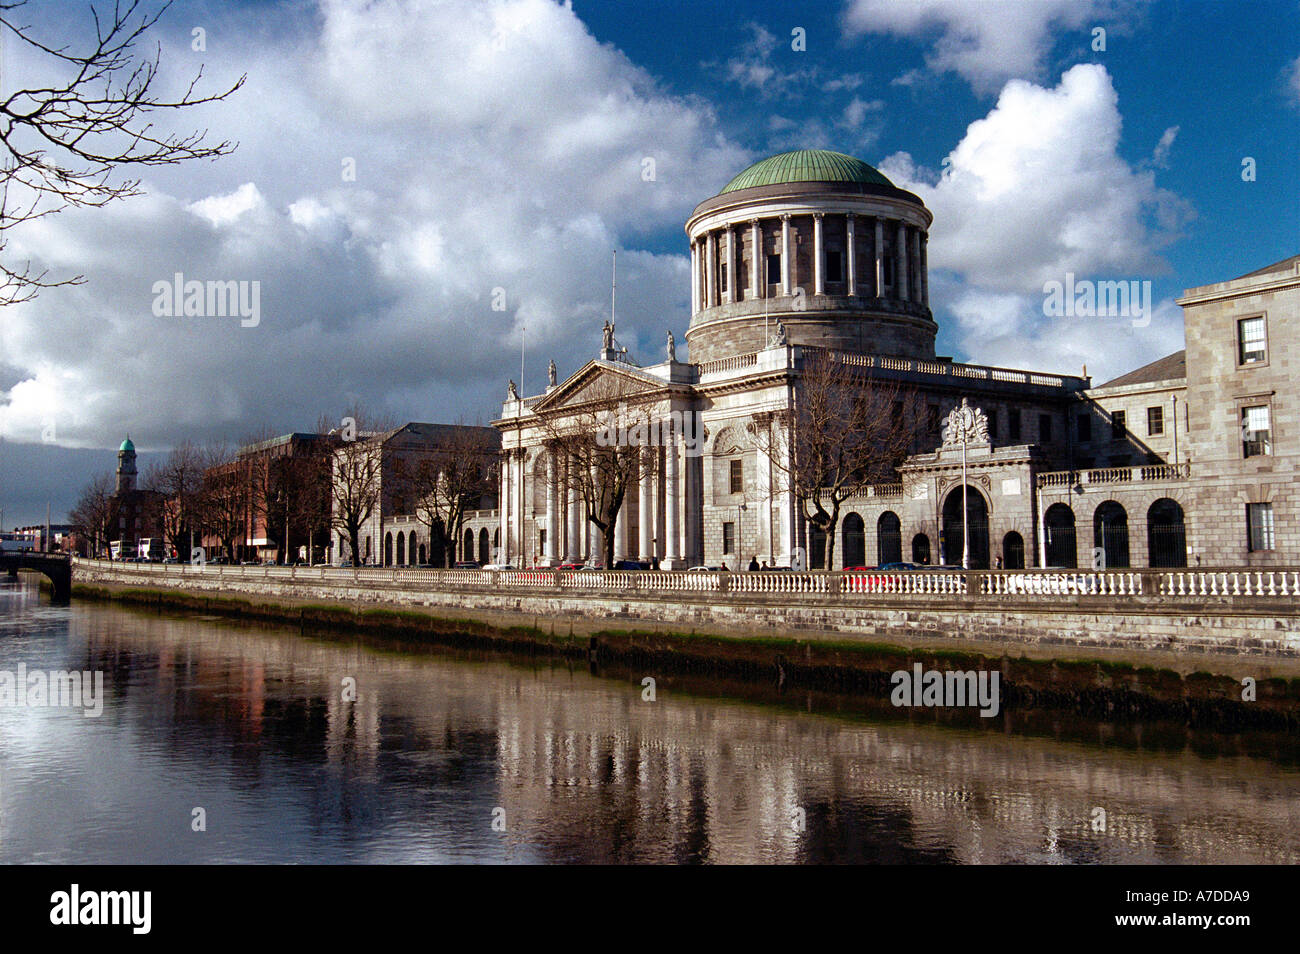 Four Courts Dublin Ireland Stock Photo